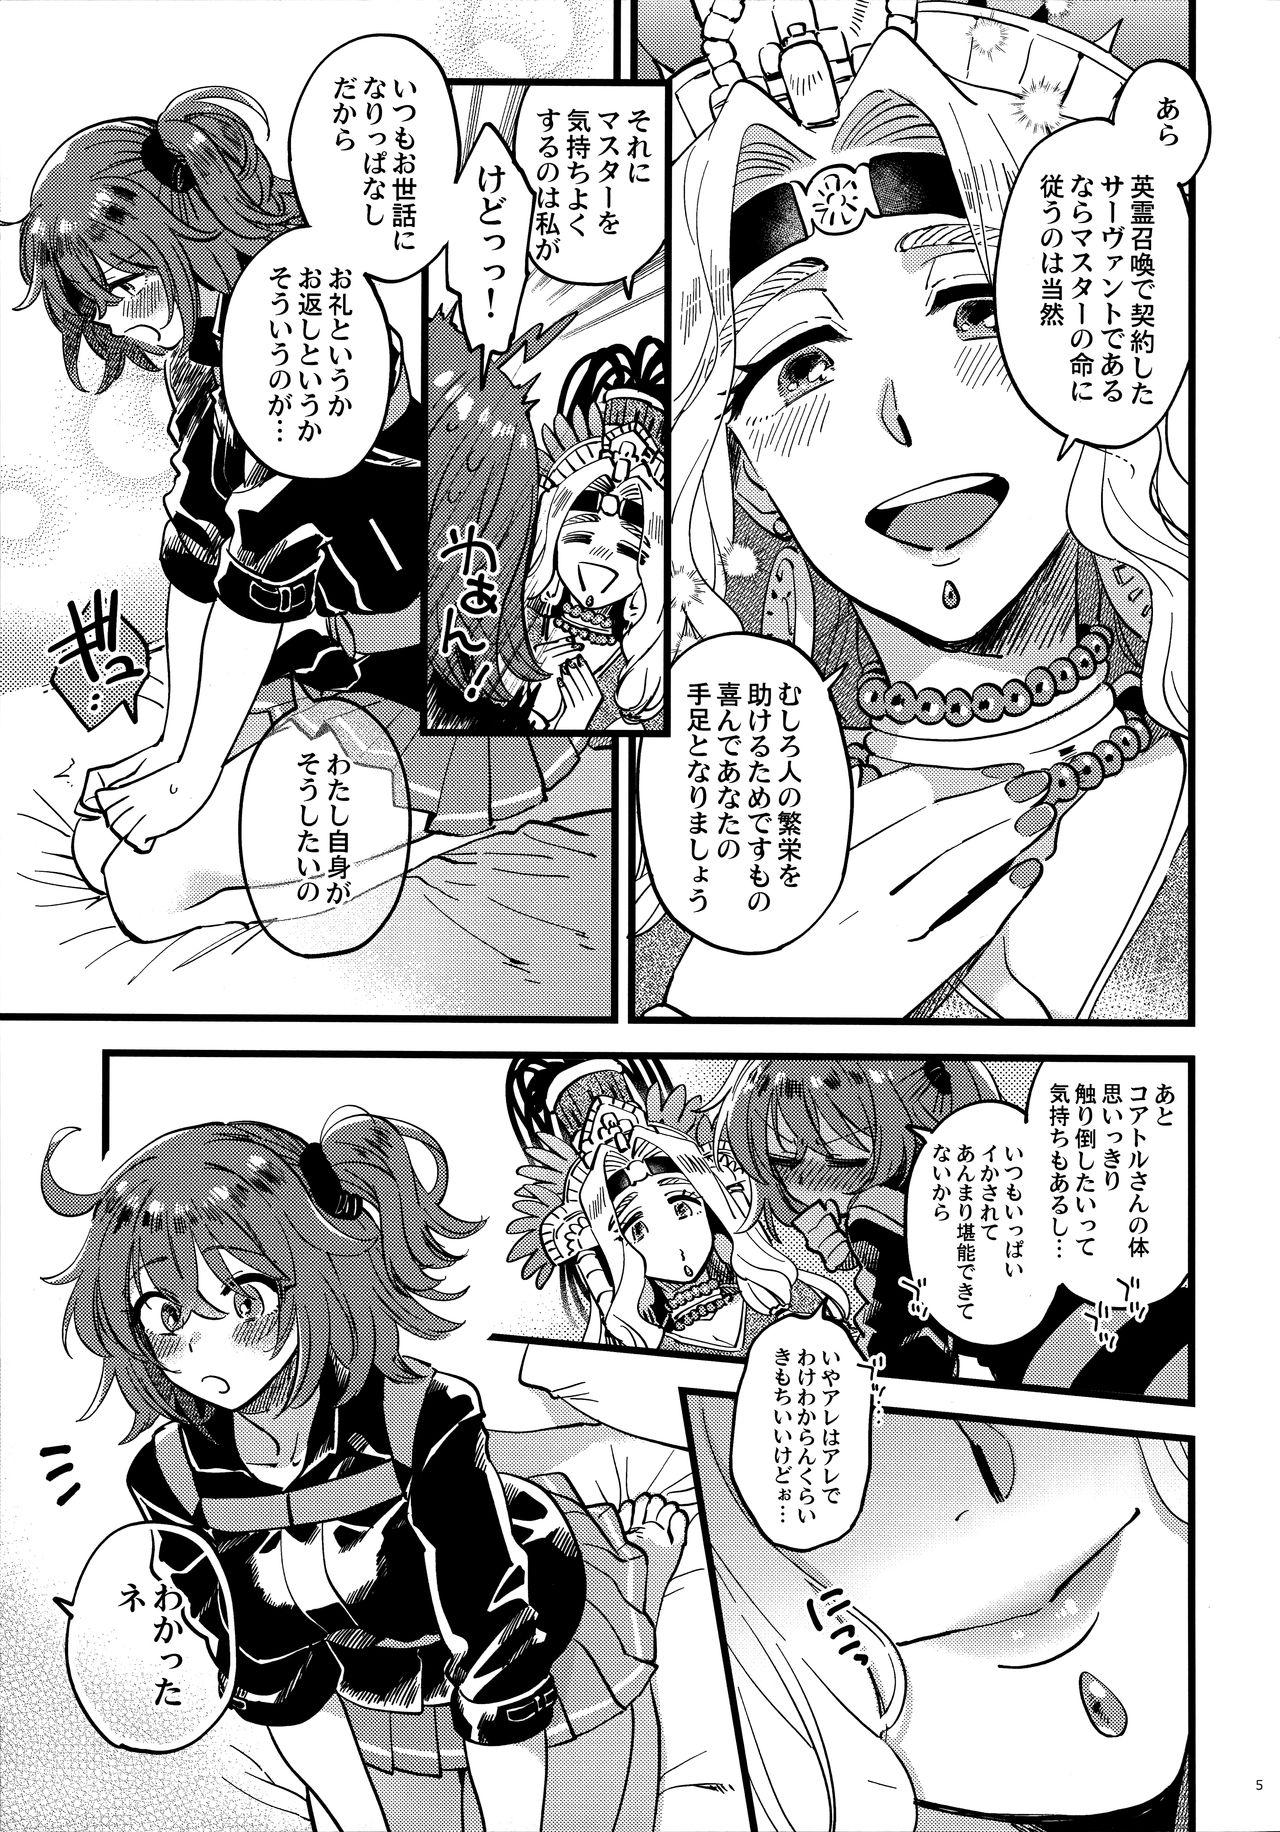 The Kyou wa Watashi ga Suru tte Itta no ni! - Fate grand order Petite Teenager - Page 4